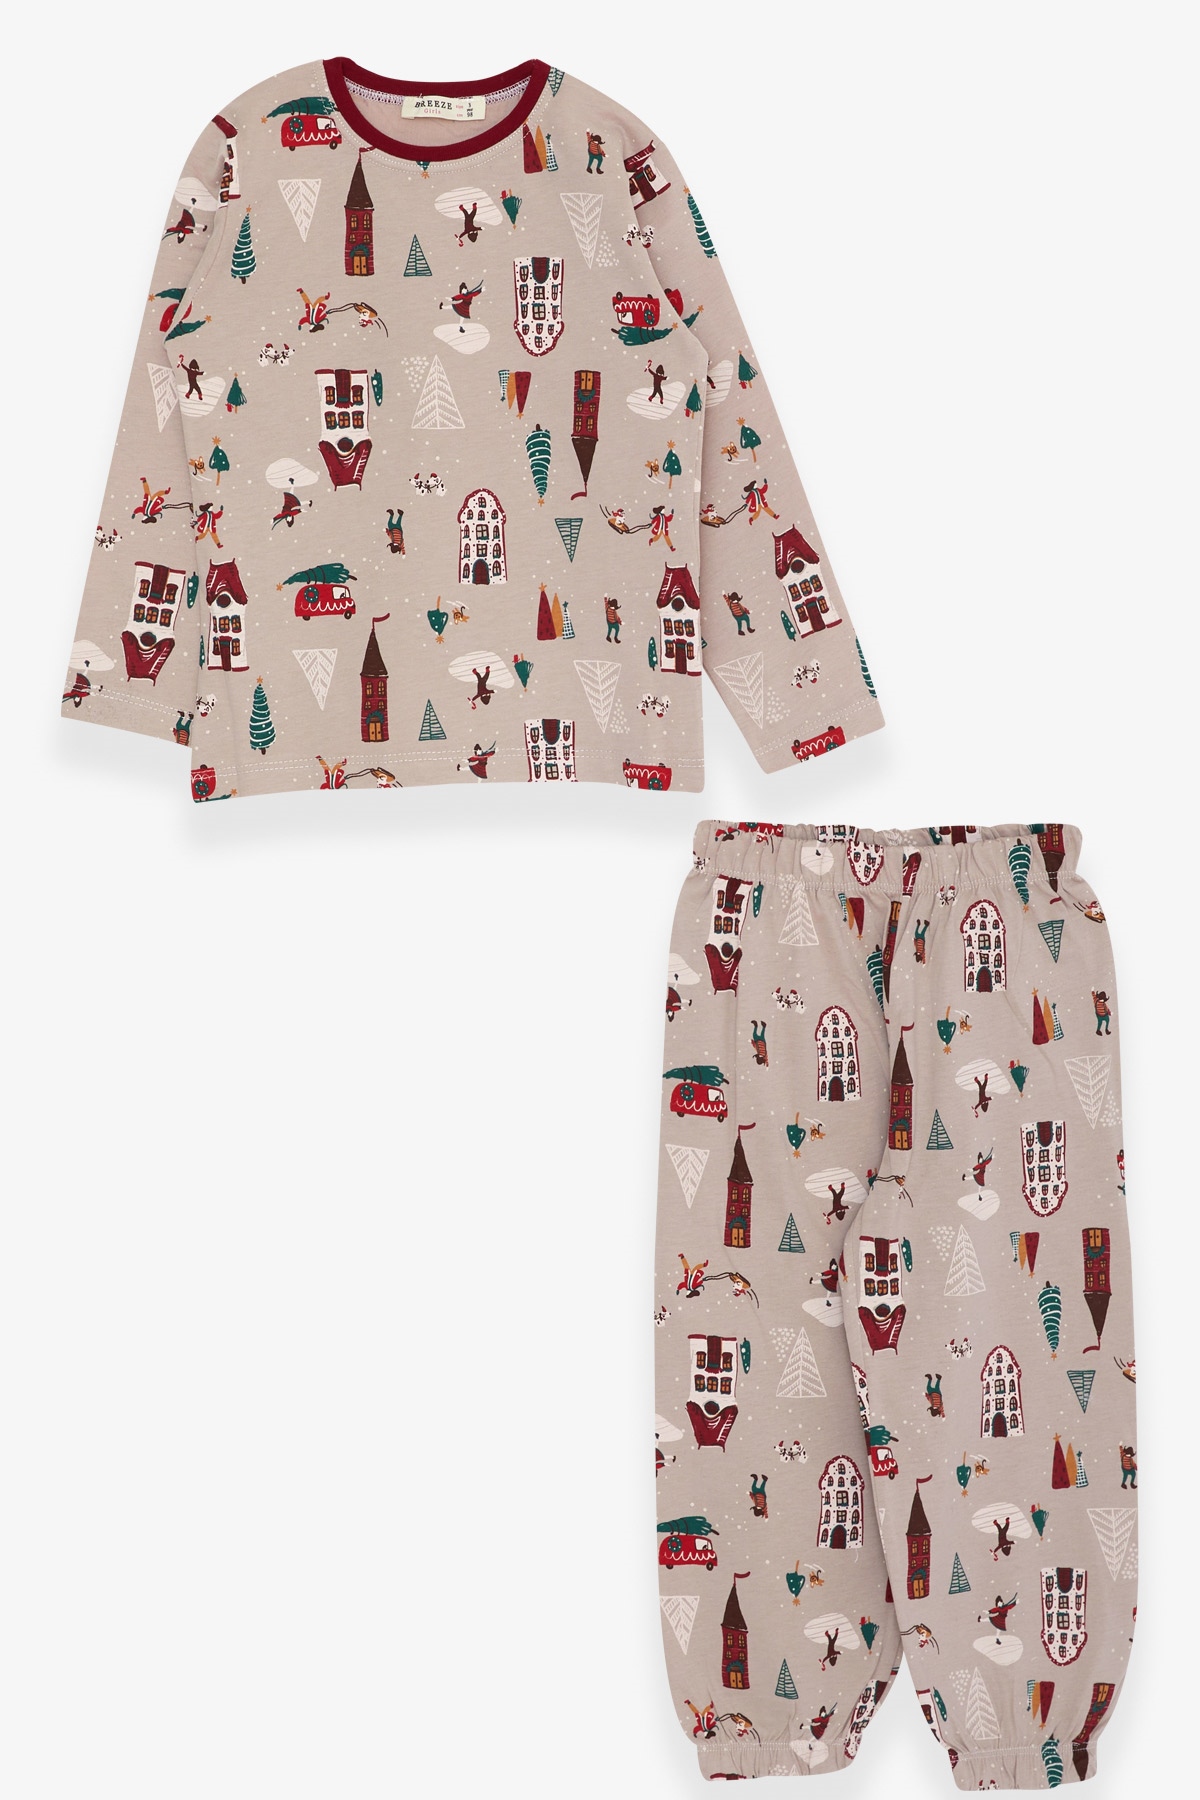 Kız Bebek Pijama Takımı Yılbaşı Temalı Vizon 1 Yaş - Eğlenceli Kız Çocuk  Pijamaları| Breeze